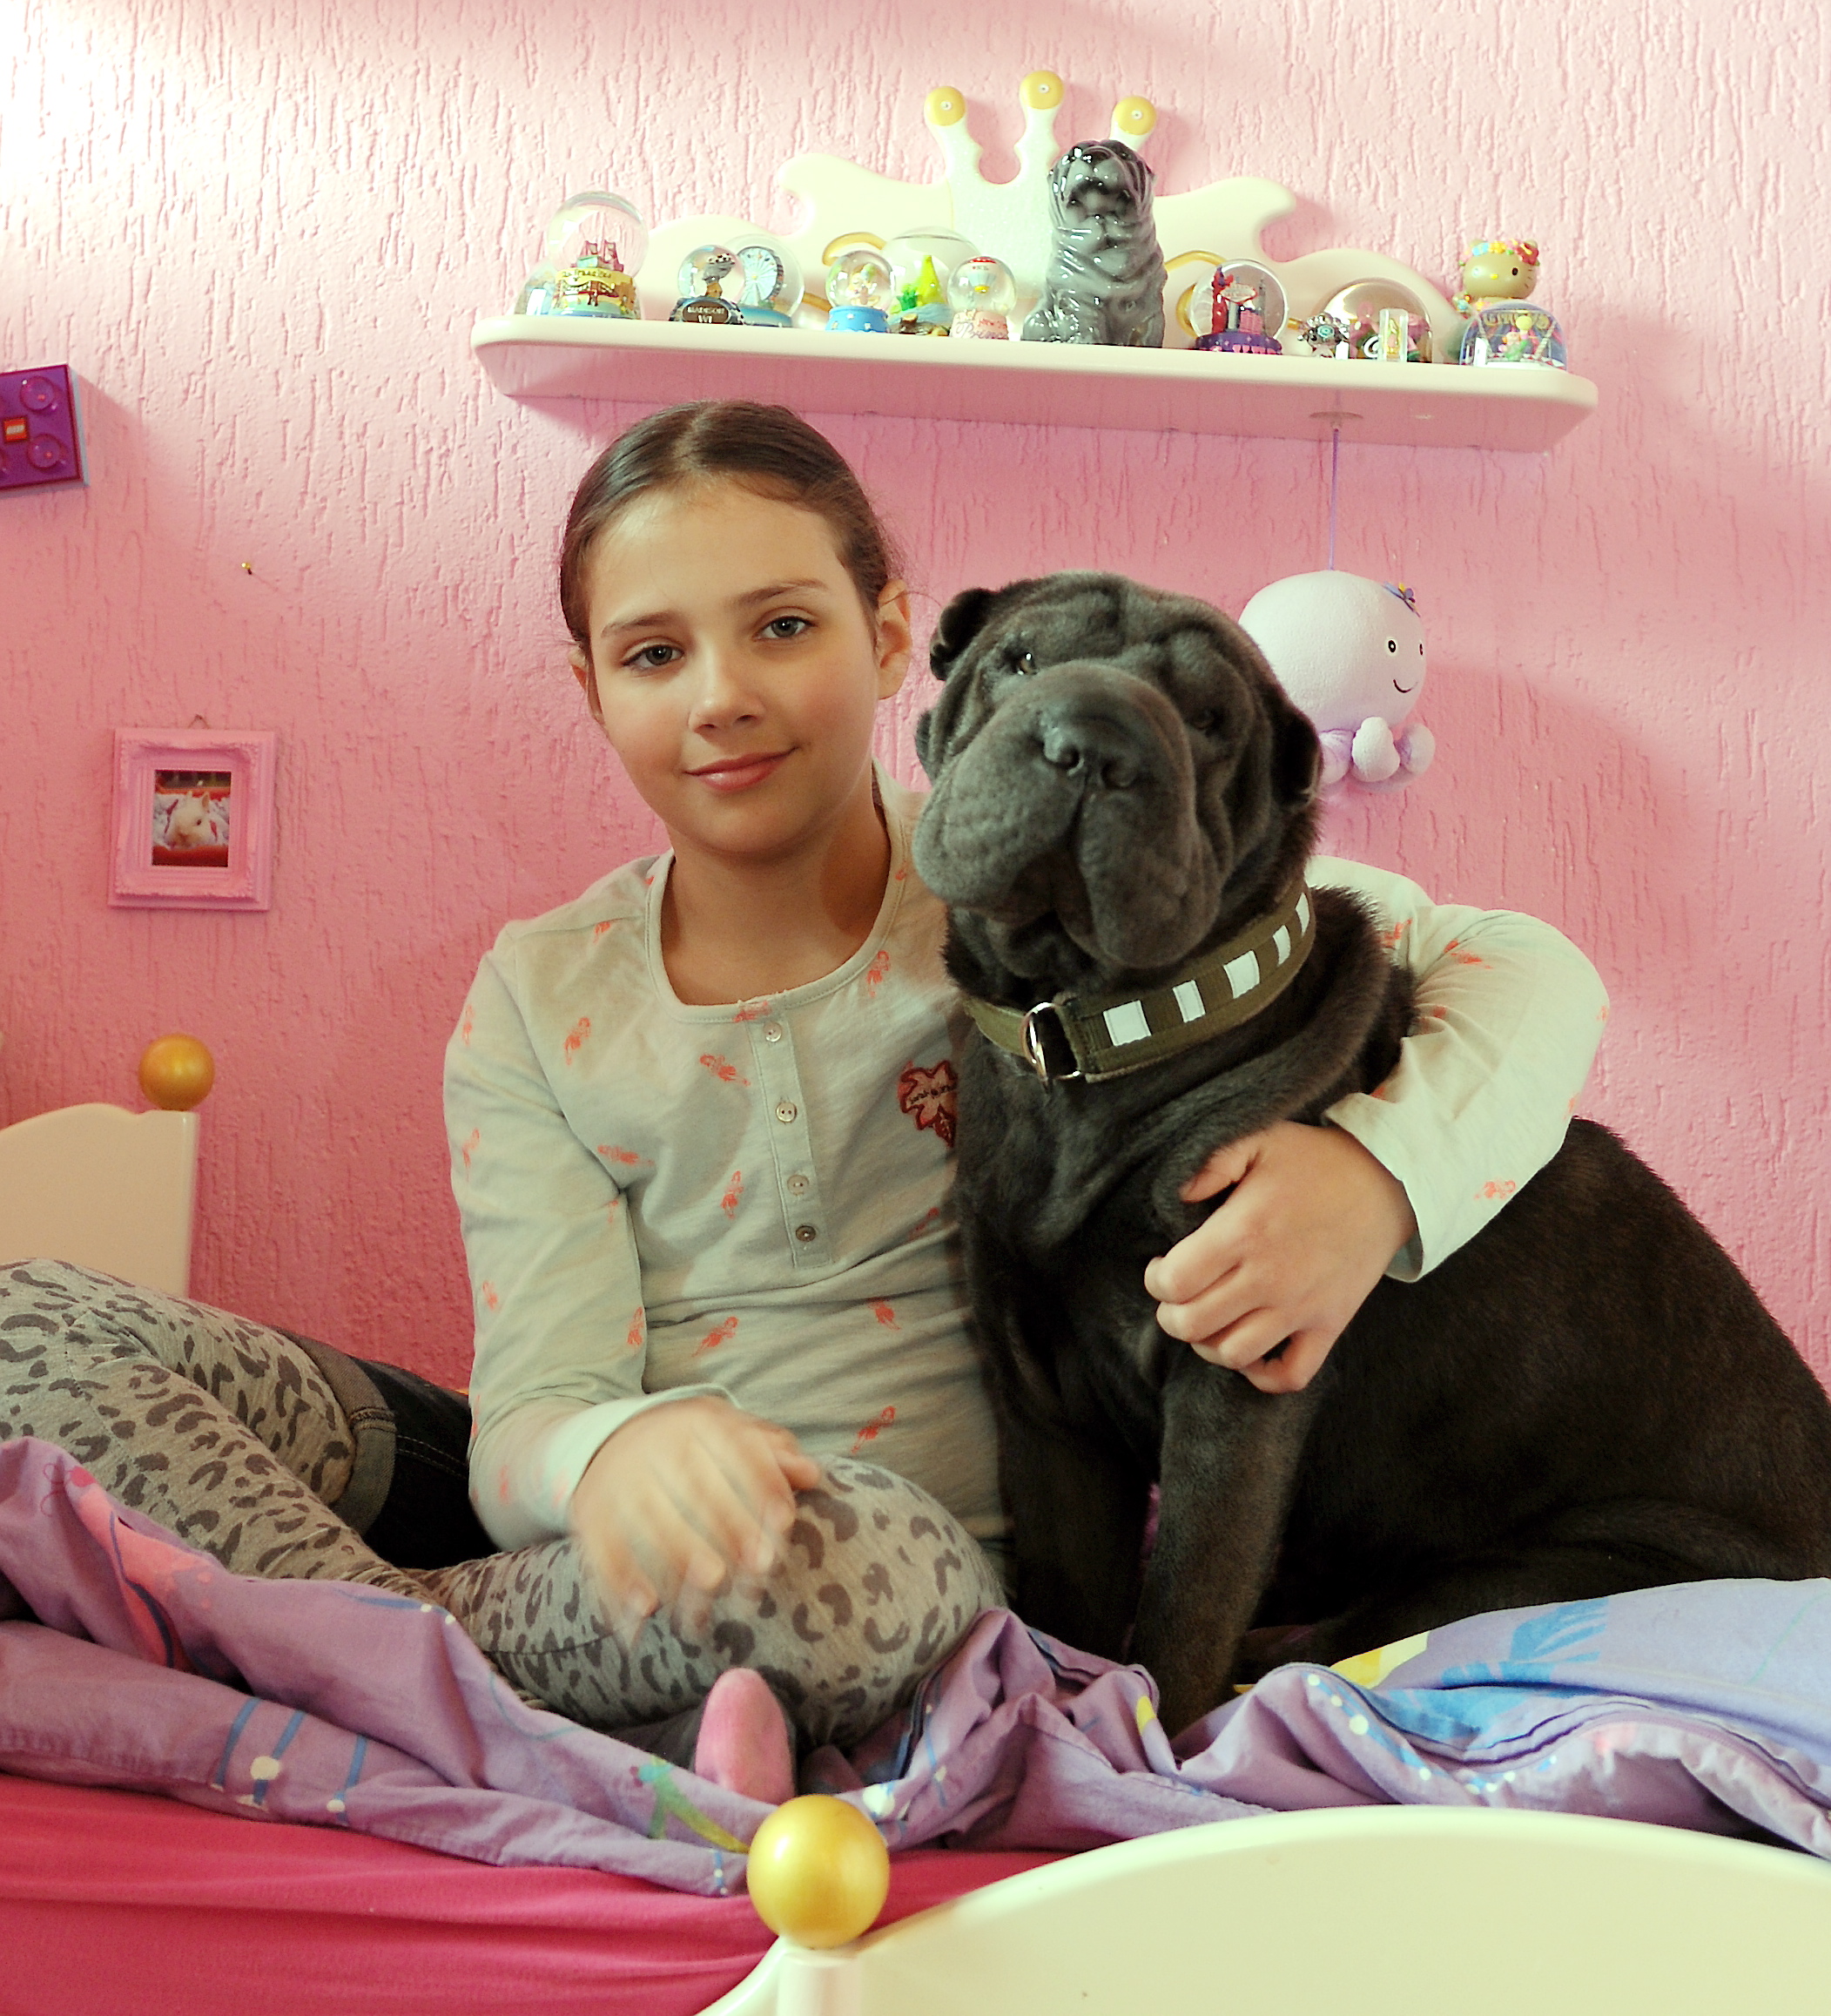 Die 9 Jahre alte Tita und ihre Shar-Pei-Hündin Betty sitzen gemeinsam auf dem Bett